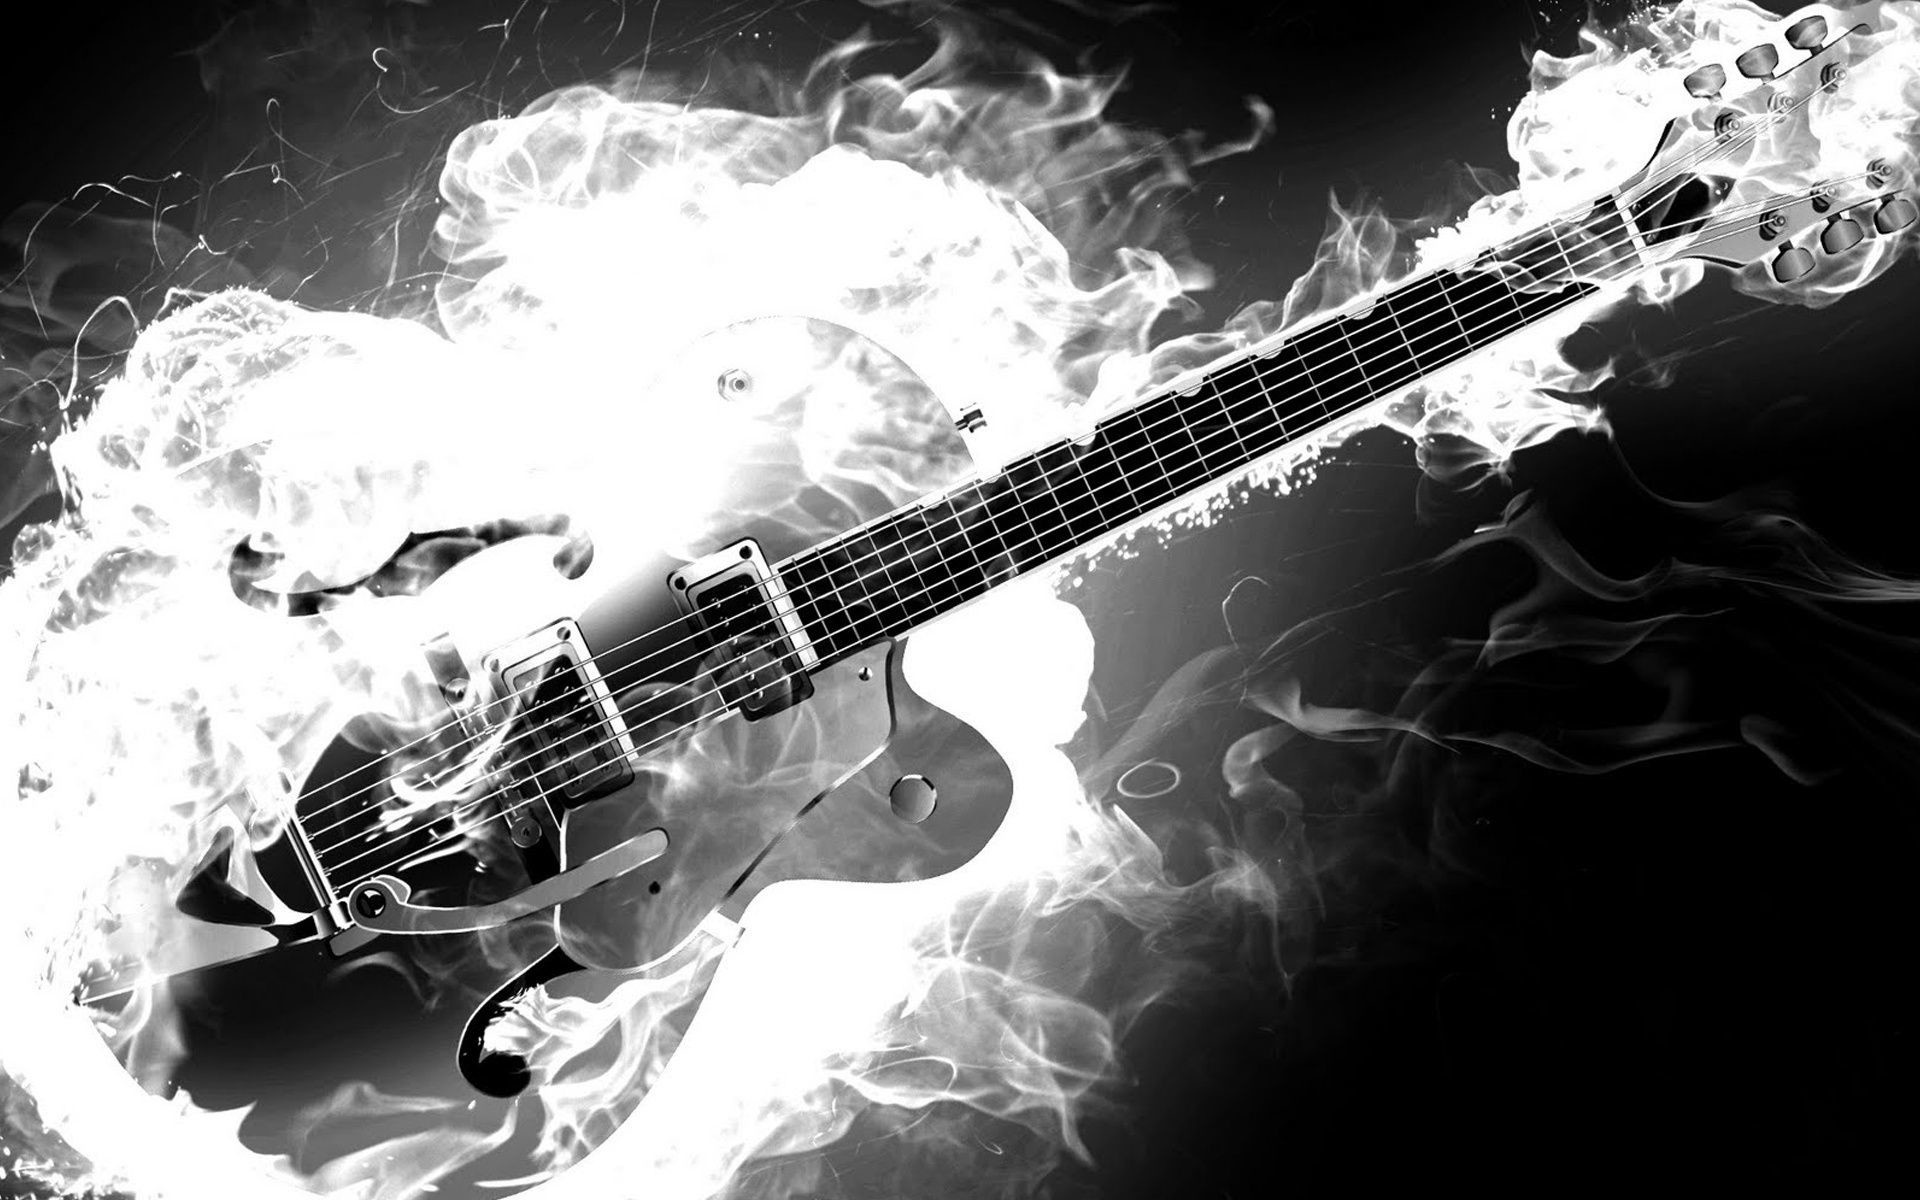 Guitar on fire, Fiery music, Breathtaking performance, Dynamic guitar, 1920x1200 HD Desktop